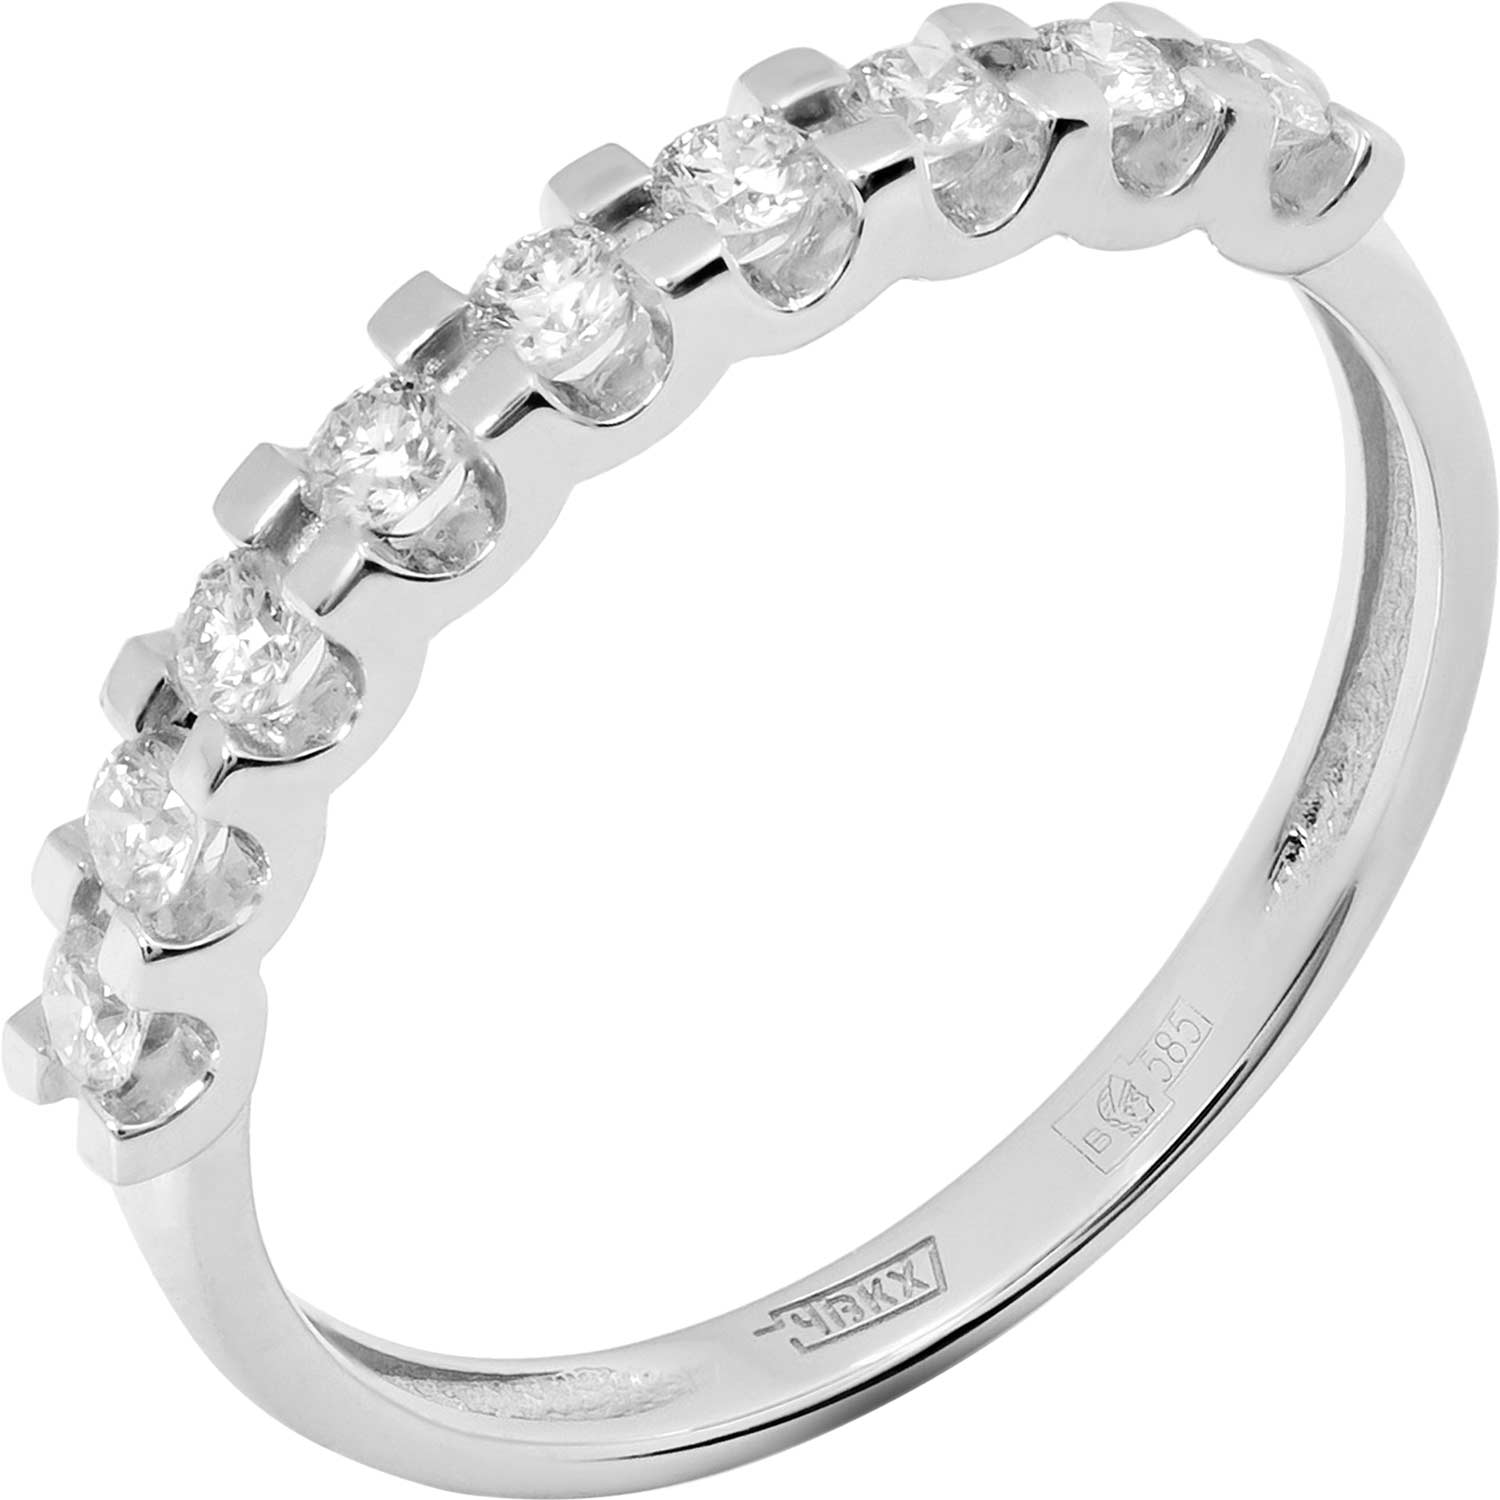     PRESTIGE Jewelry K-1309-02  